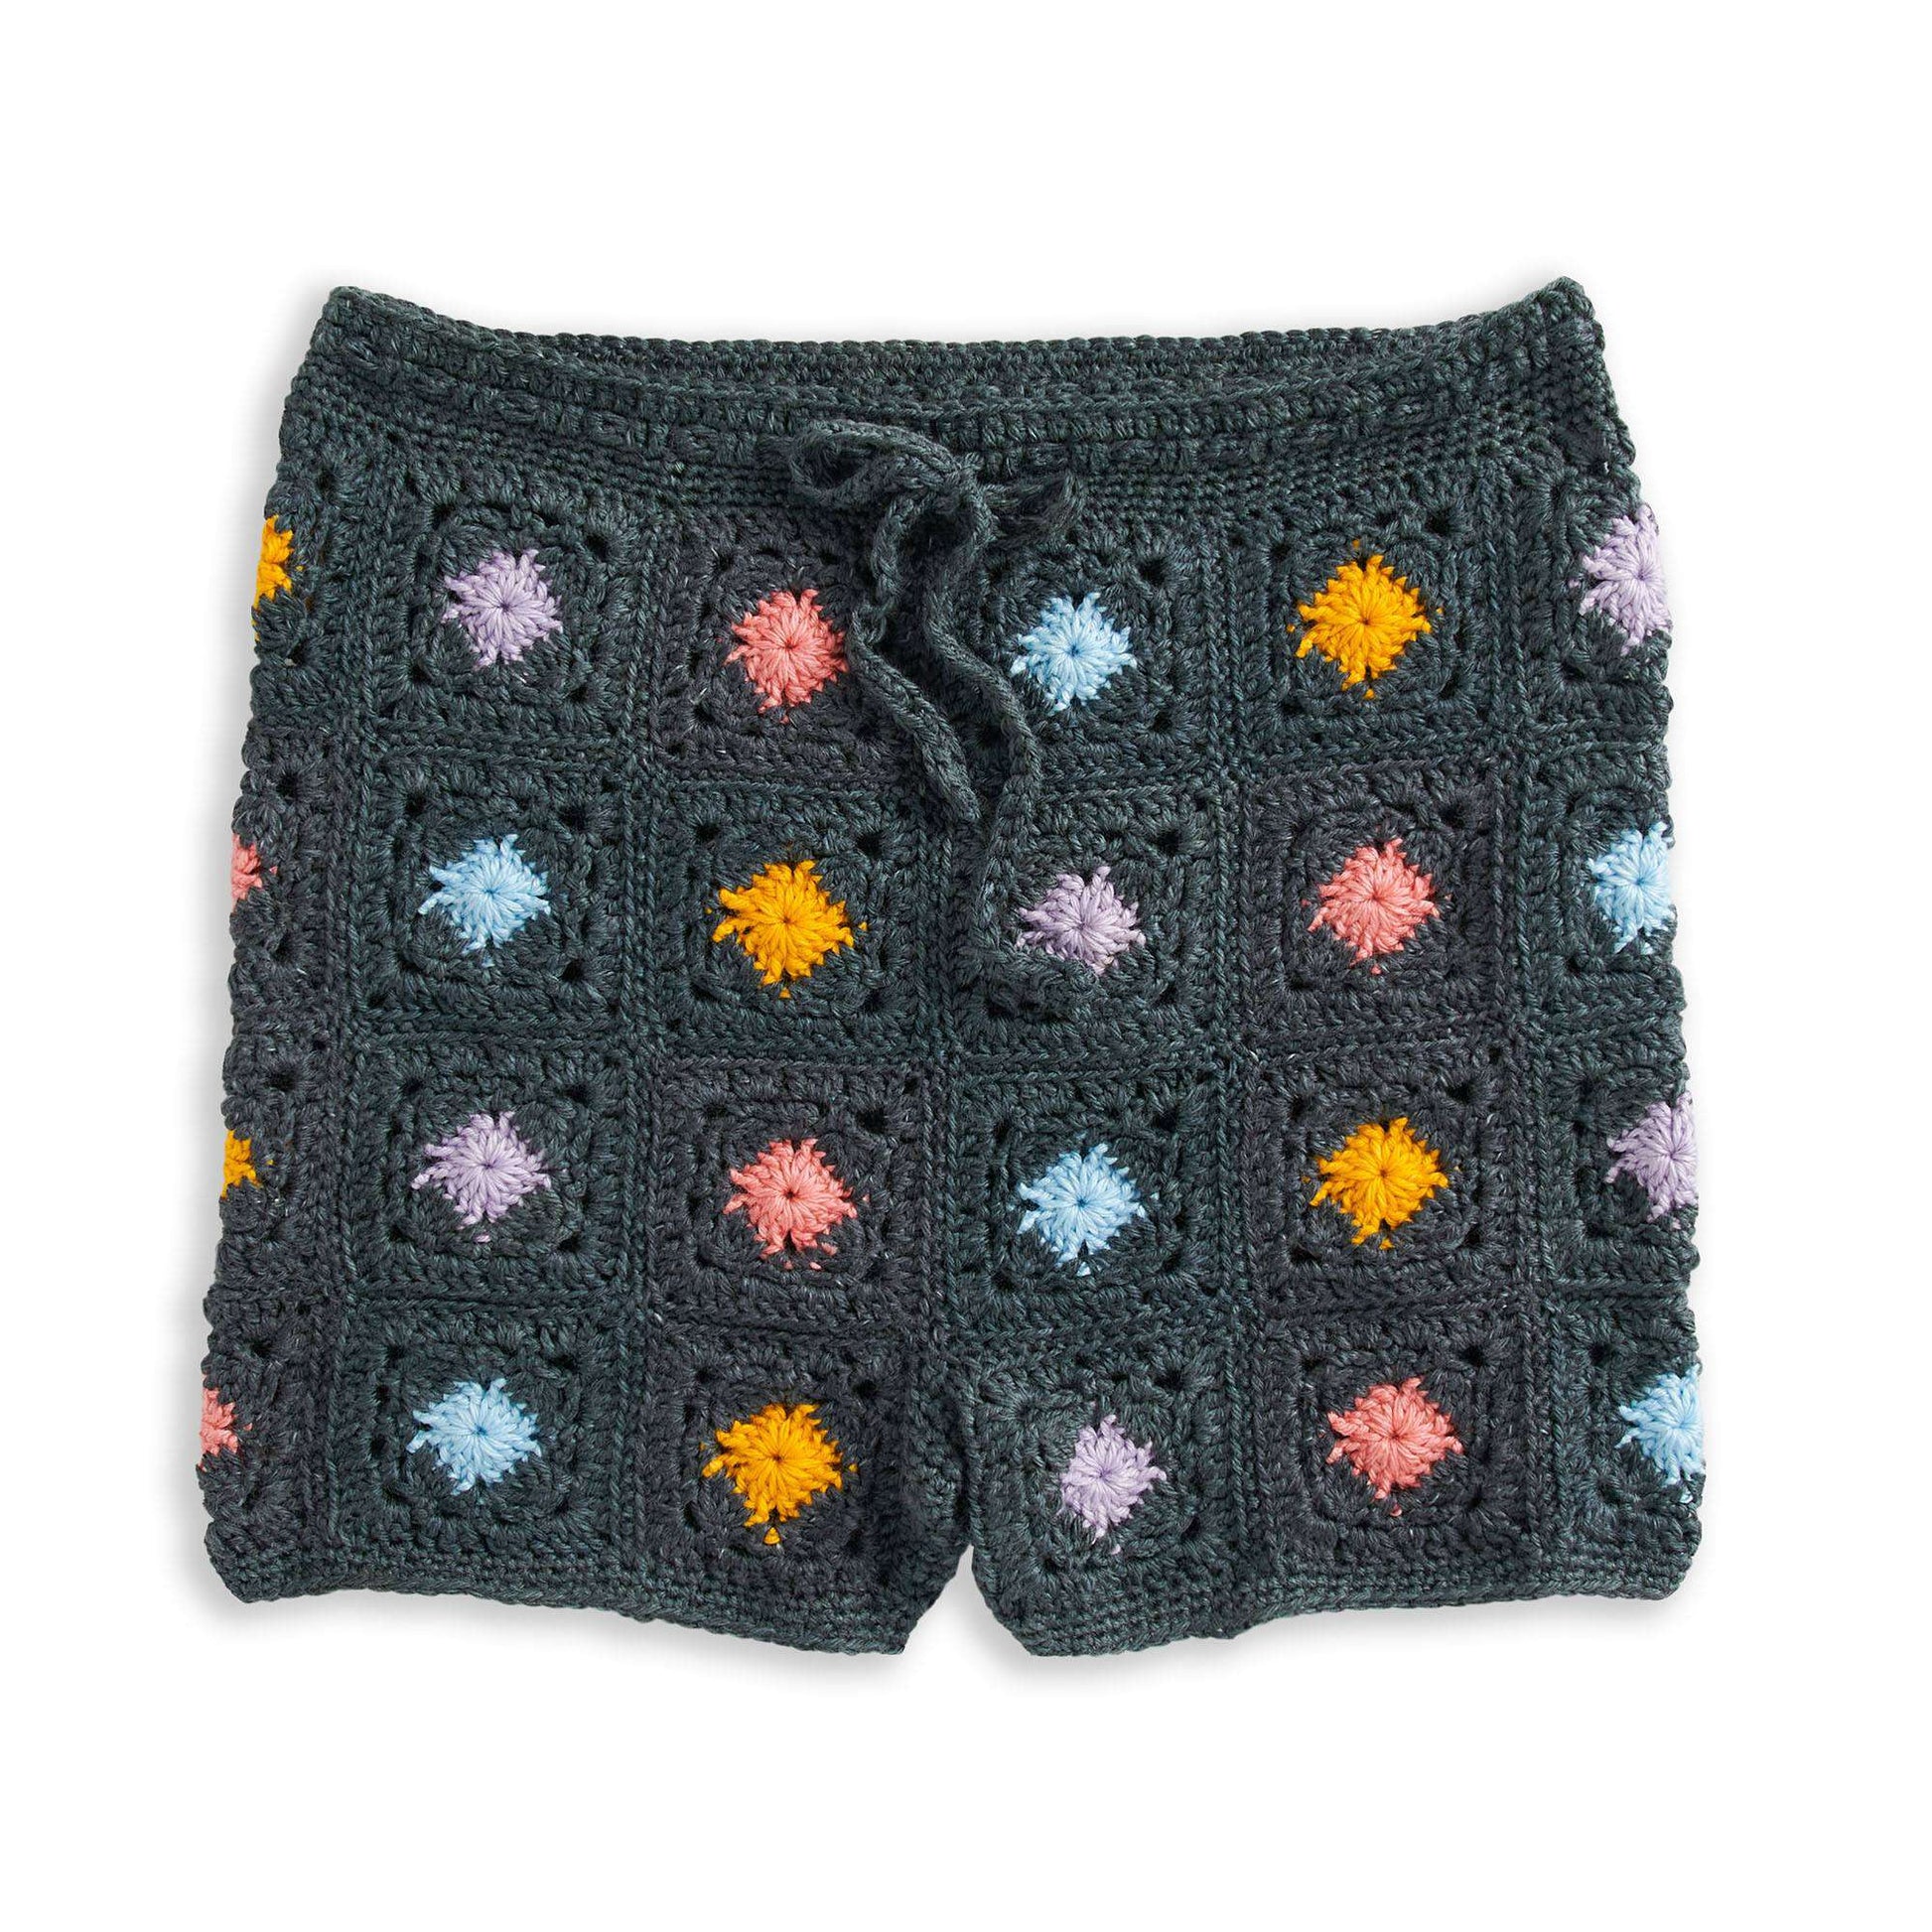 Easy Crochet Shorts Tutorial  Crochet Shorts Tutorial For